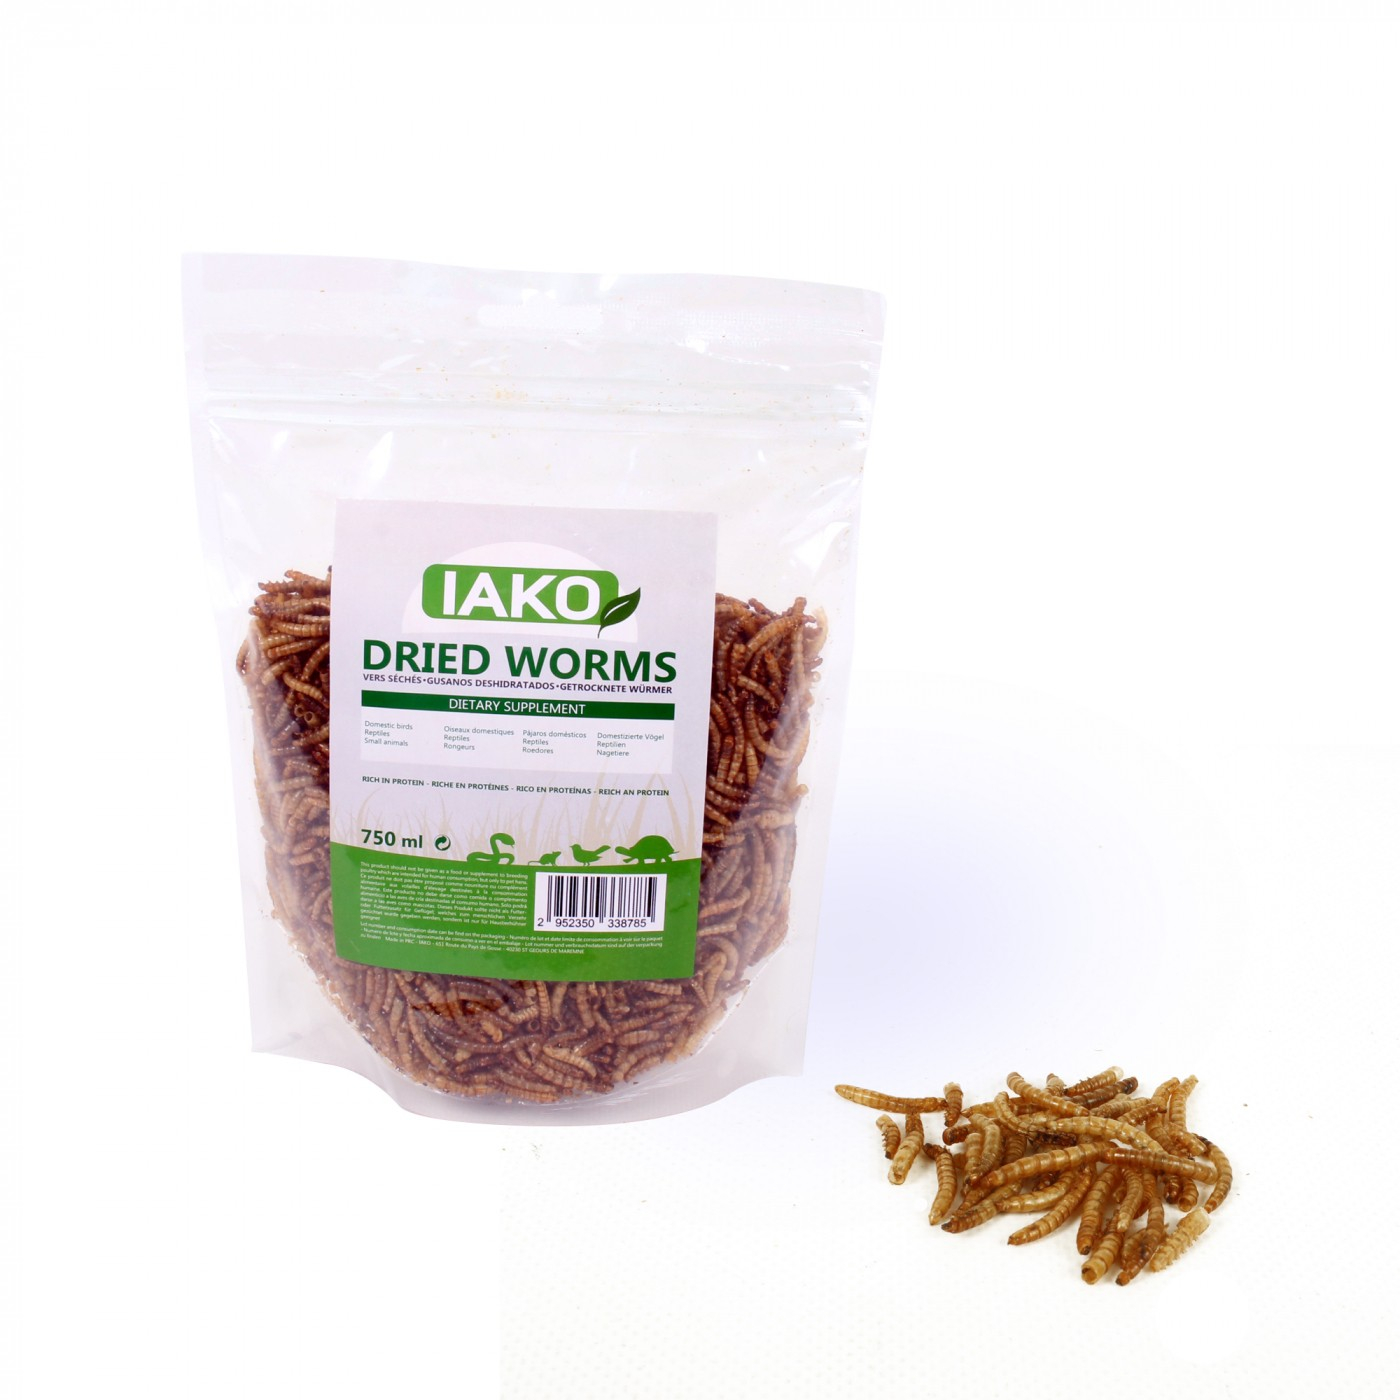 IAKO Dried Worms vermi di farina essiccati e naturali per rettili e uccelli